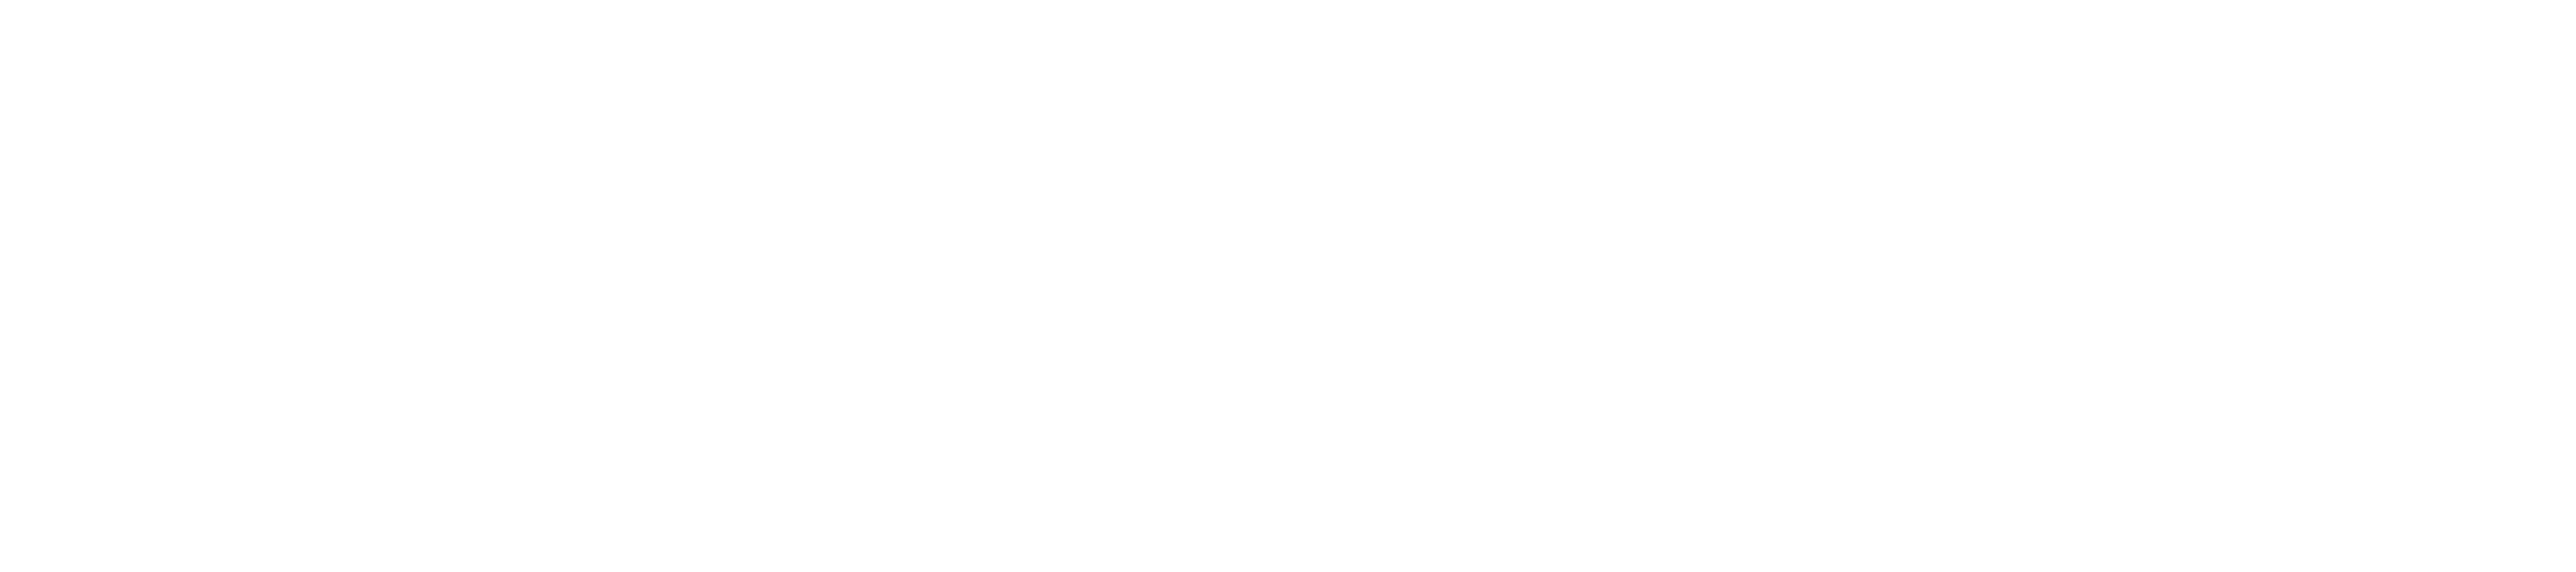 The Disaster Artist logo